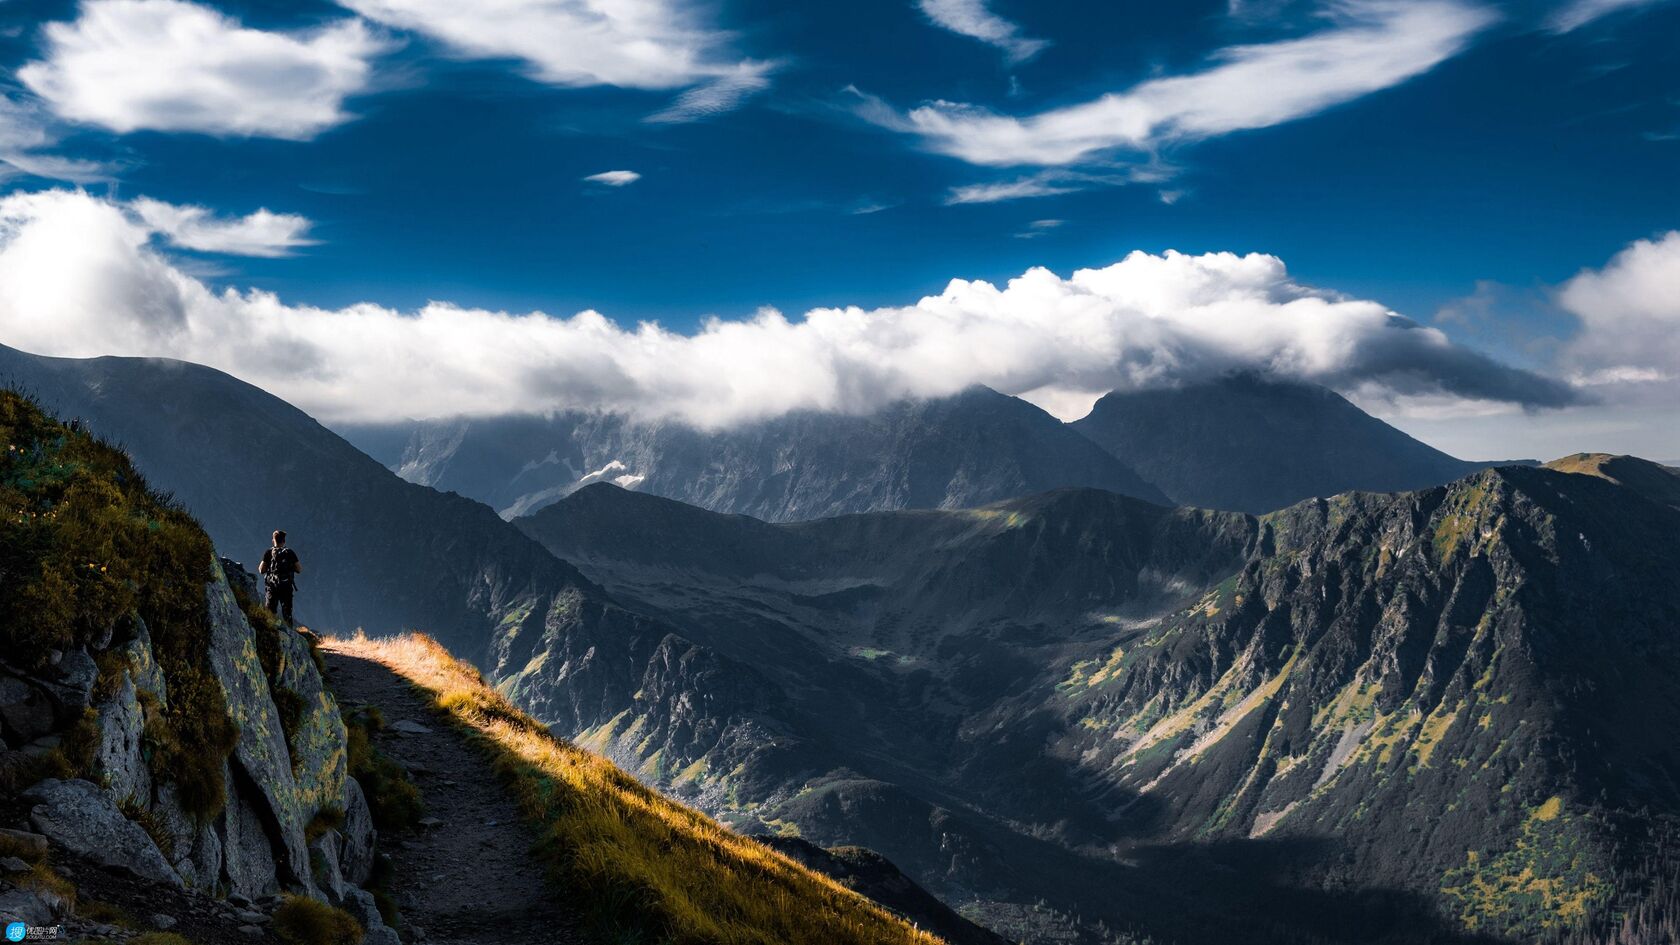 塔特拉山 山脉 旅行者 背包客 云彩 壮观景色壁纸图片第1张图片